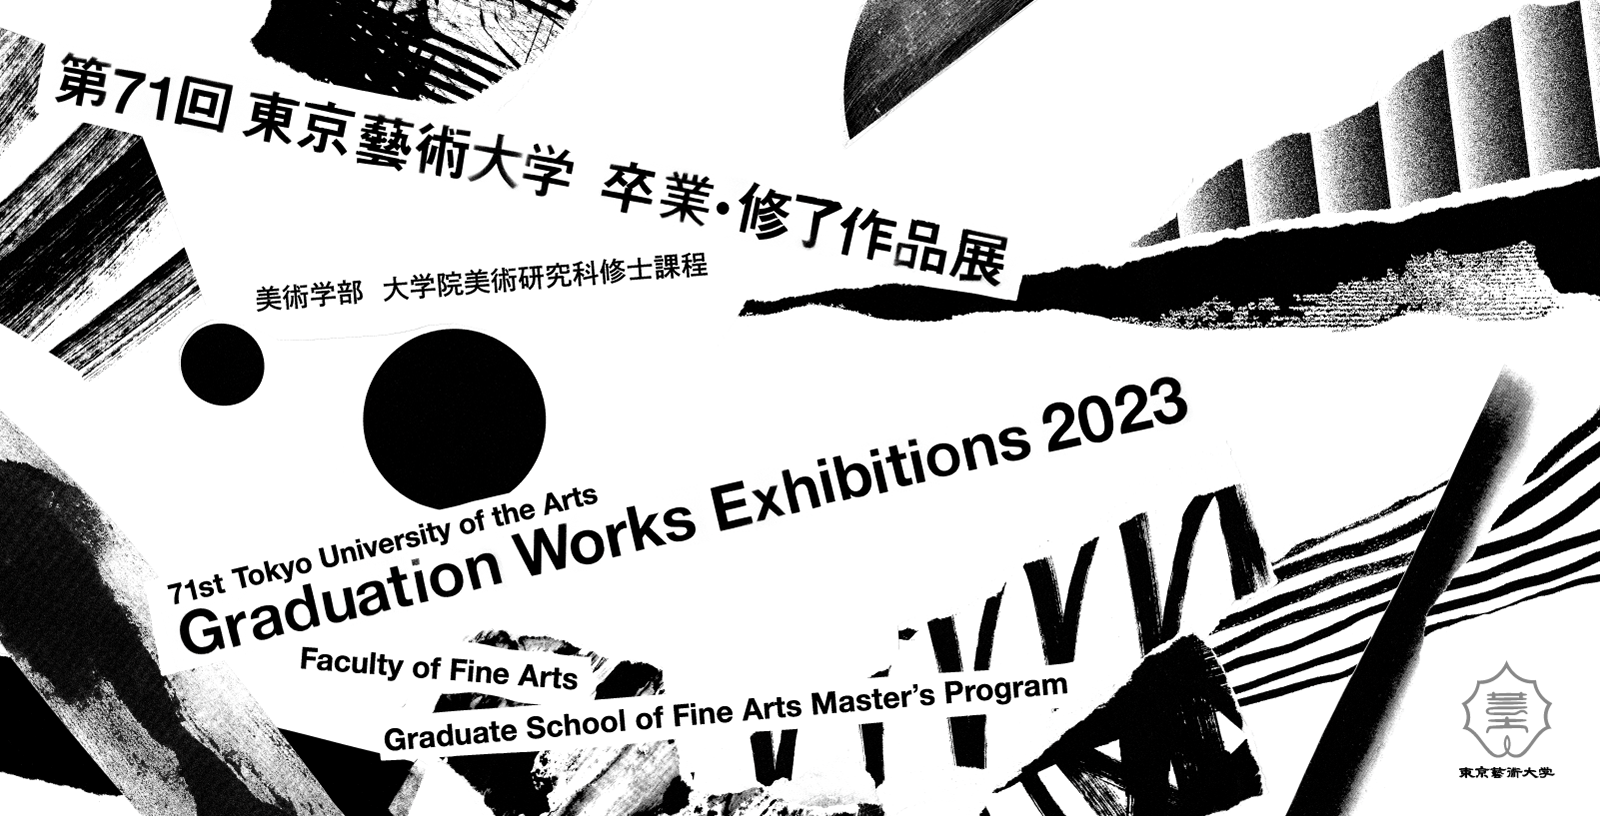 第71回東京藝術大学 卒業・修了作品展 美術学部 大学院美術研究科修士課程 2023